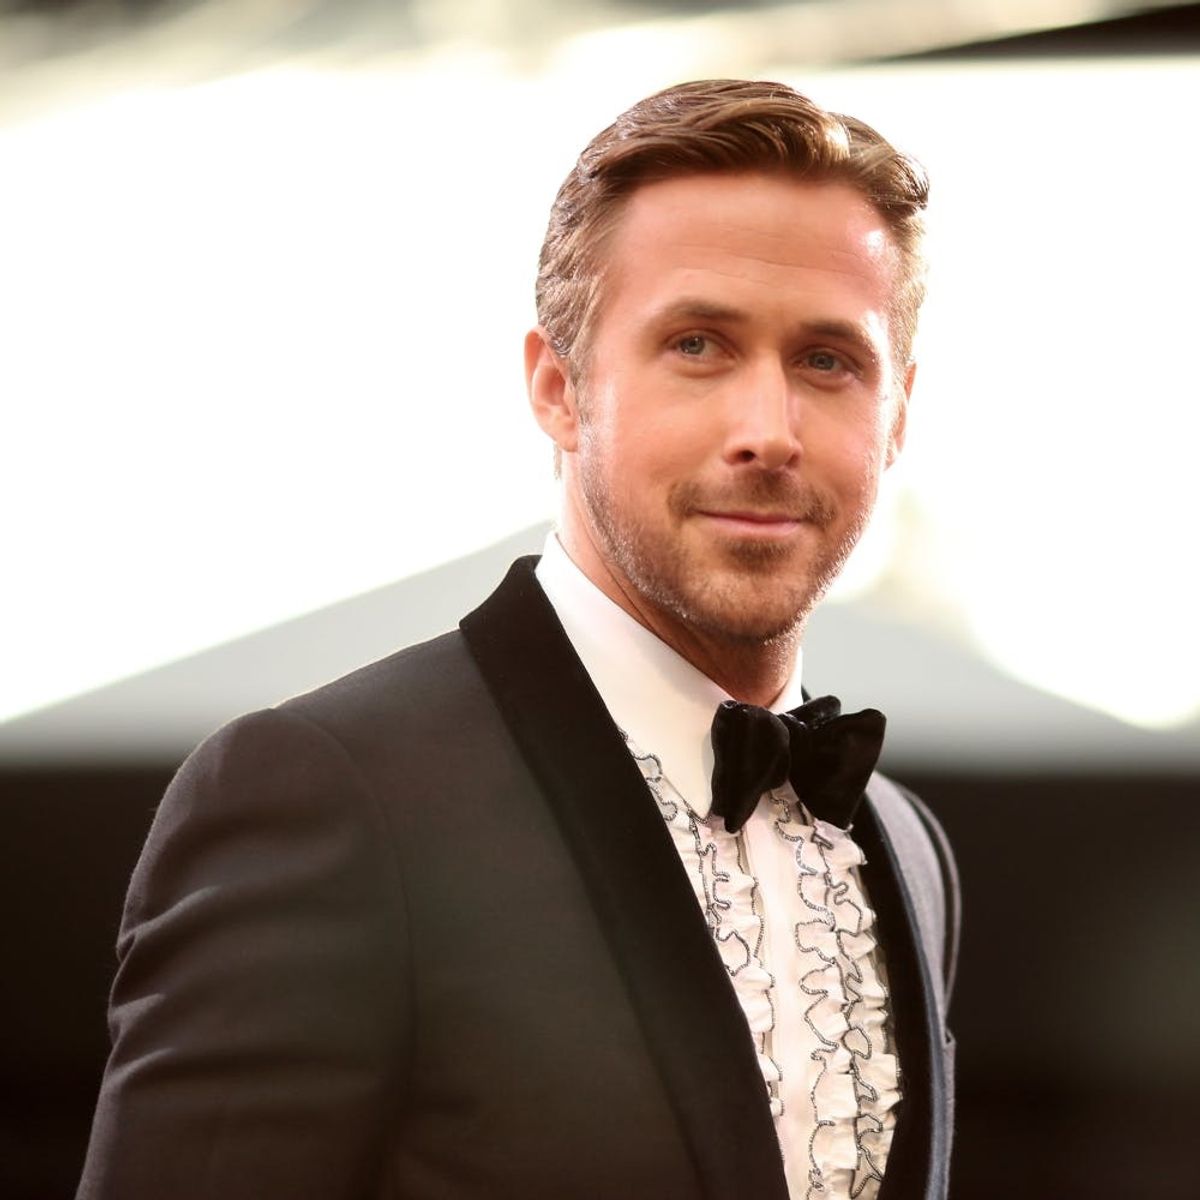 This Ryan Gosling Lookalike Has Fans Shook